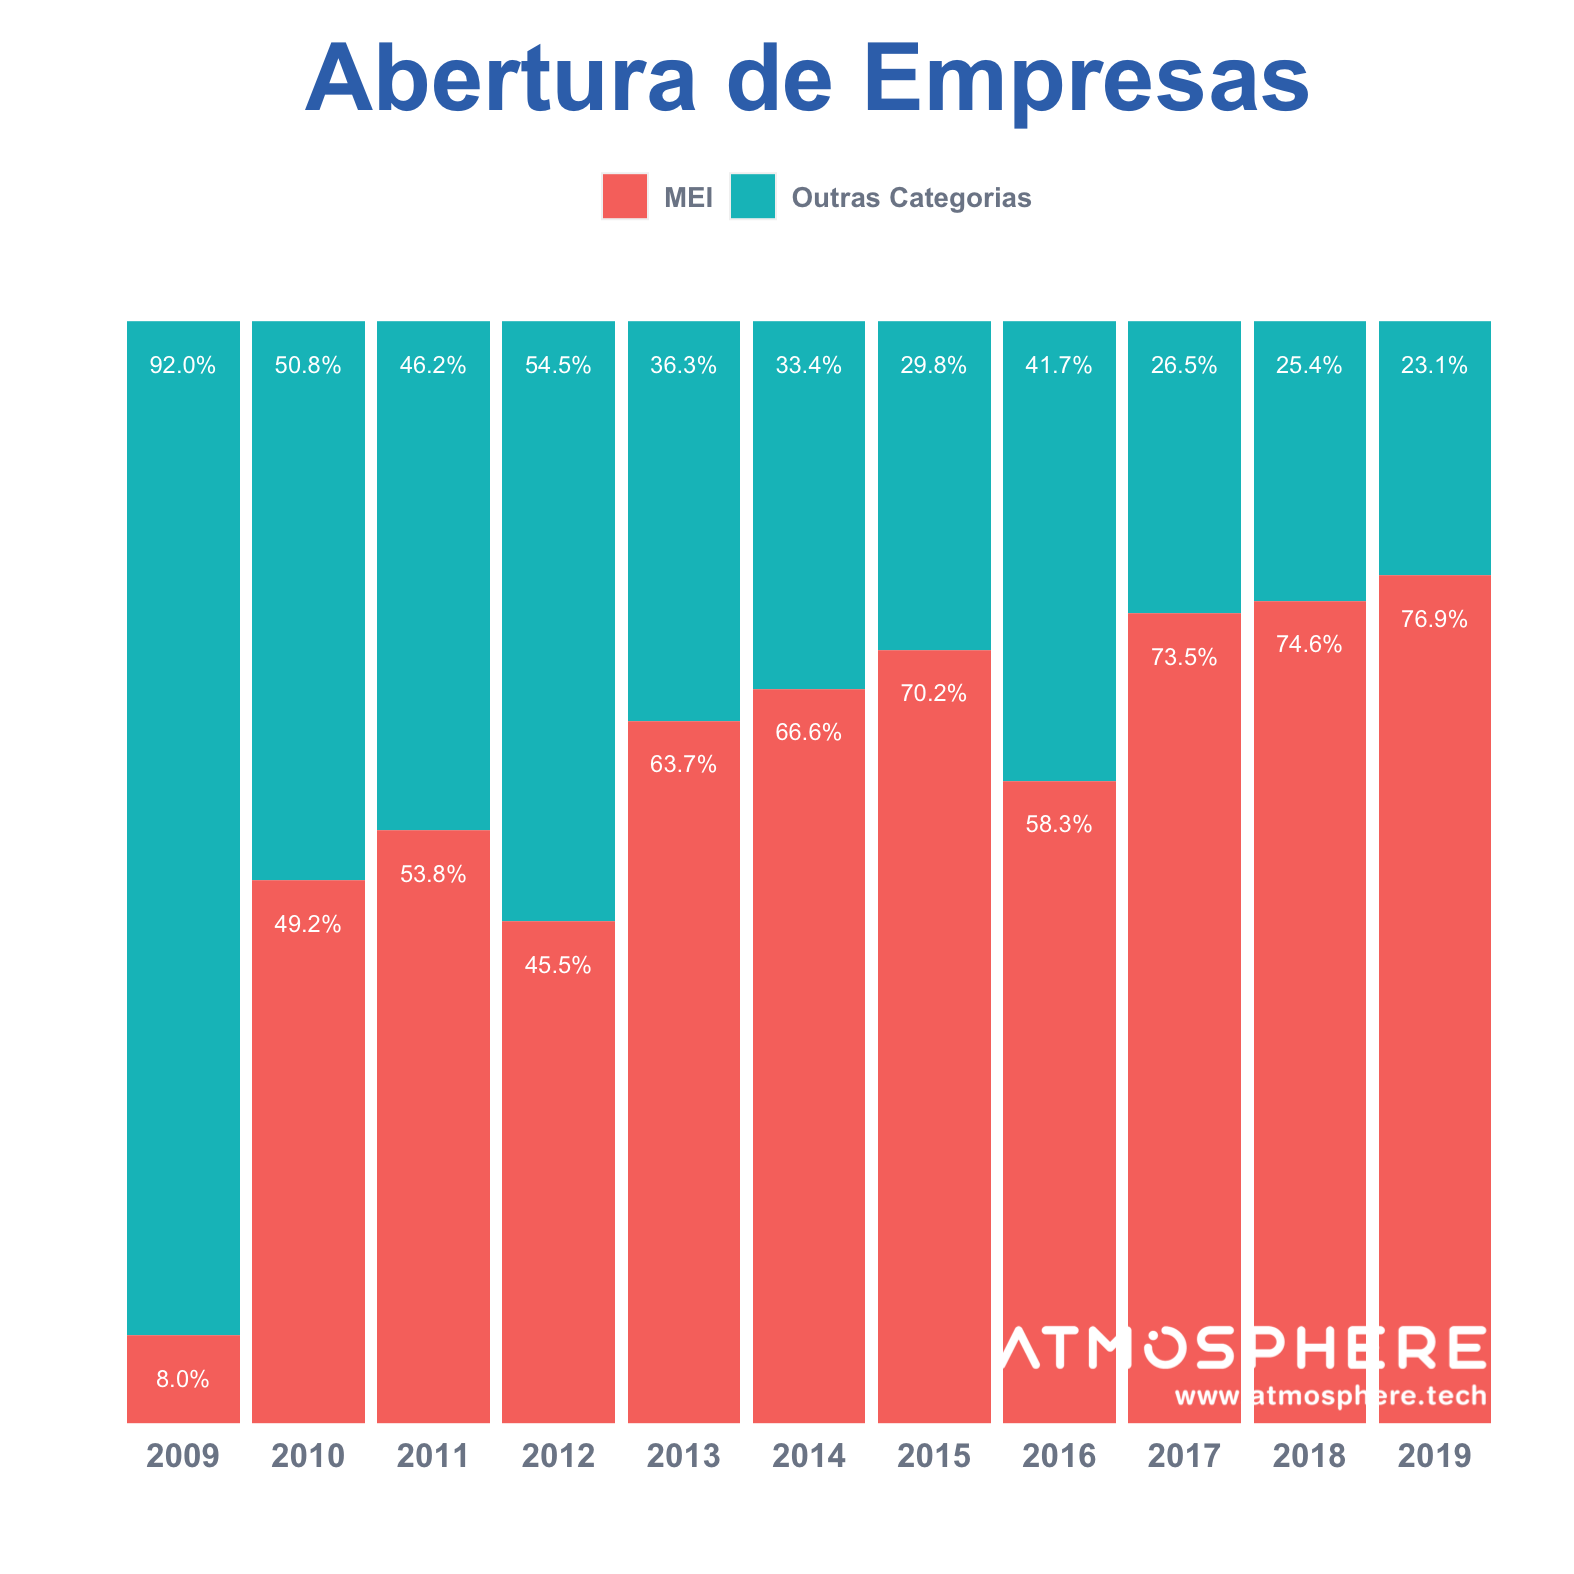 Atmosphere Abertura de Empresas Percentual ano a ano por categoria